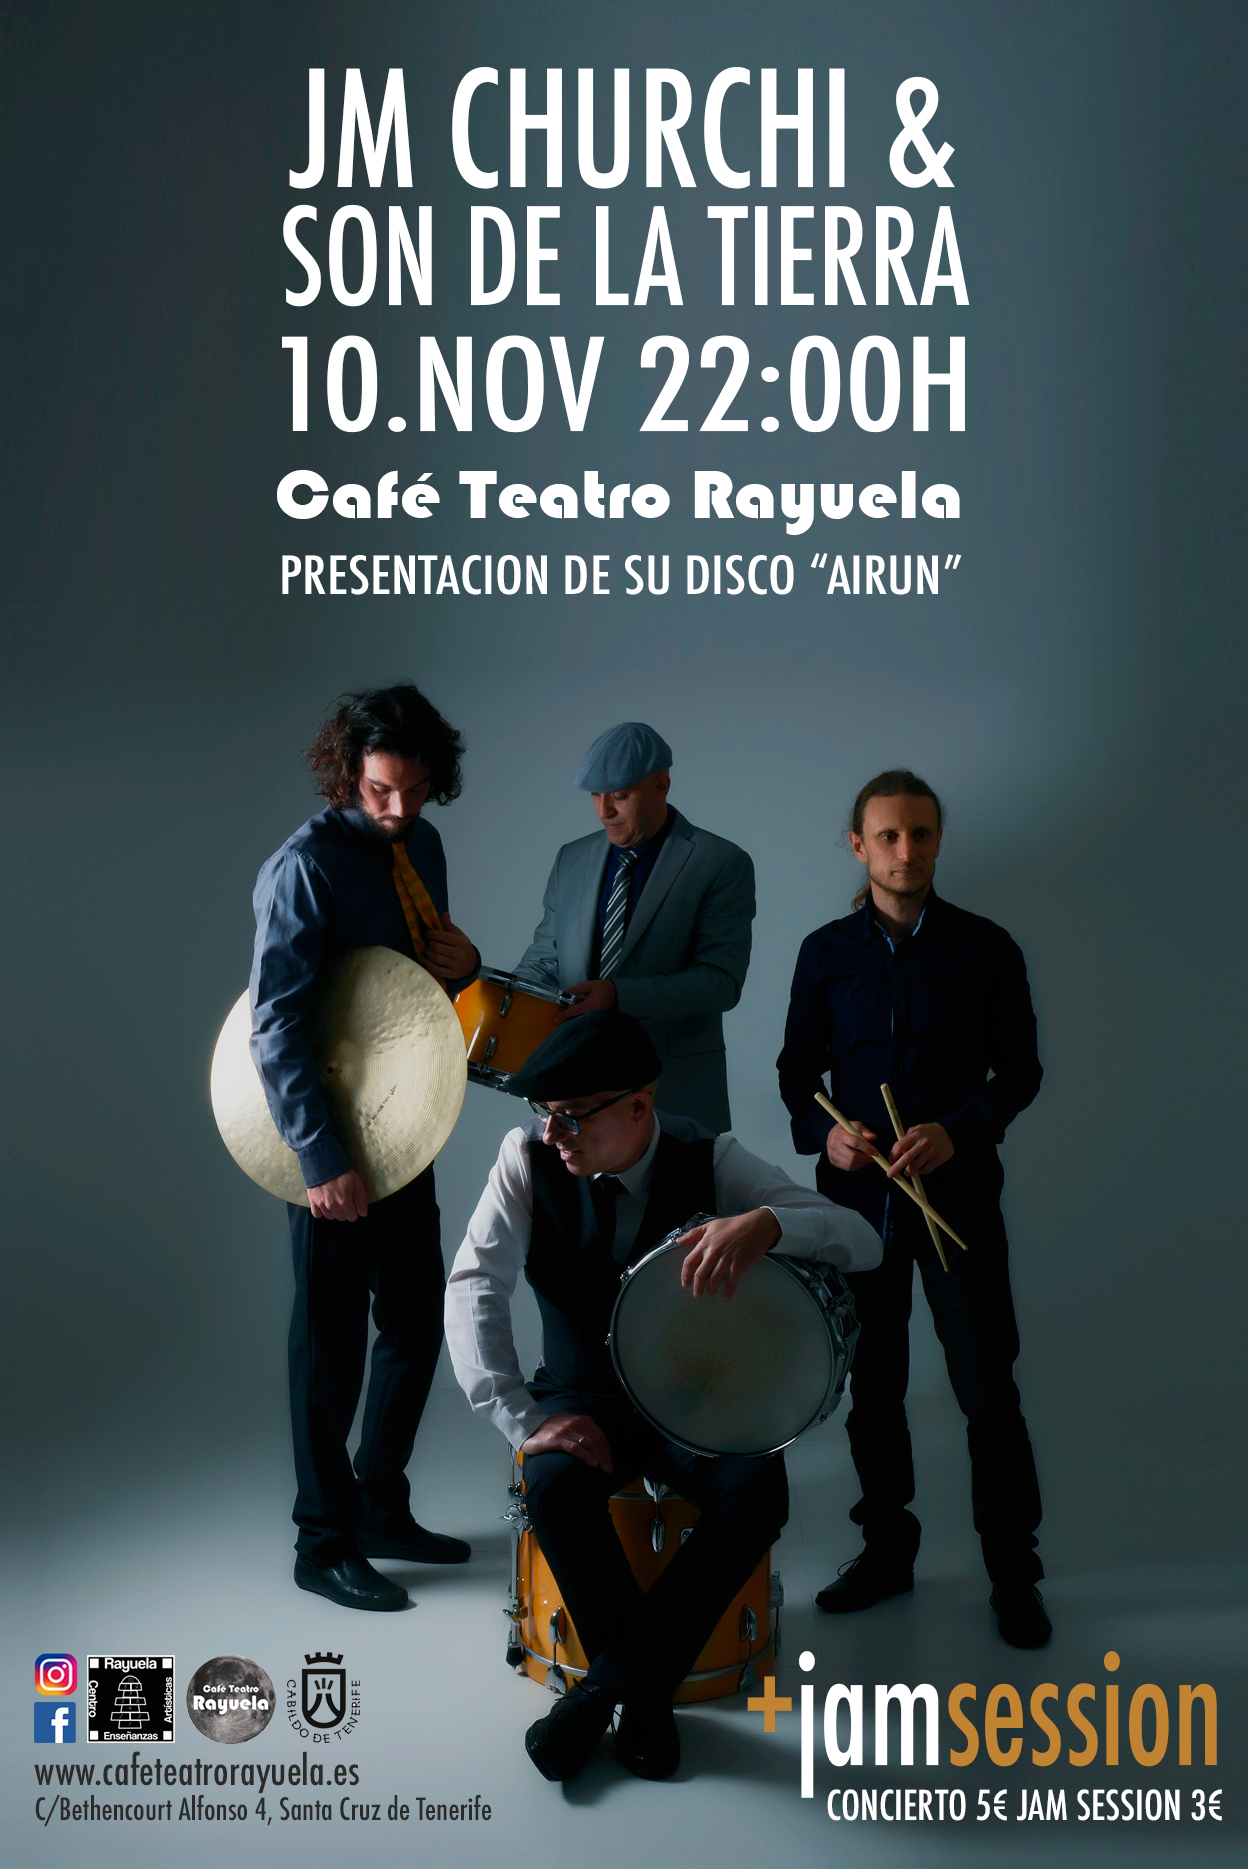 JM ChurchiI y Son de la Tierra (latin jazz) actuarán en el Café Teatro Rayuela